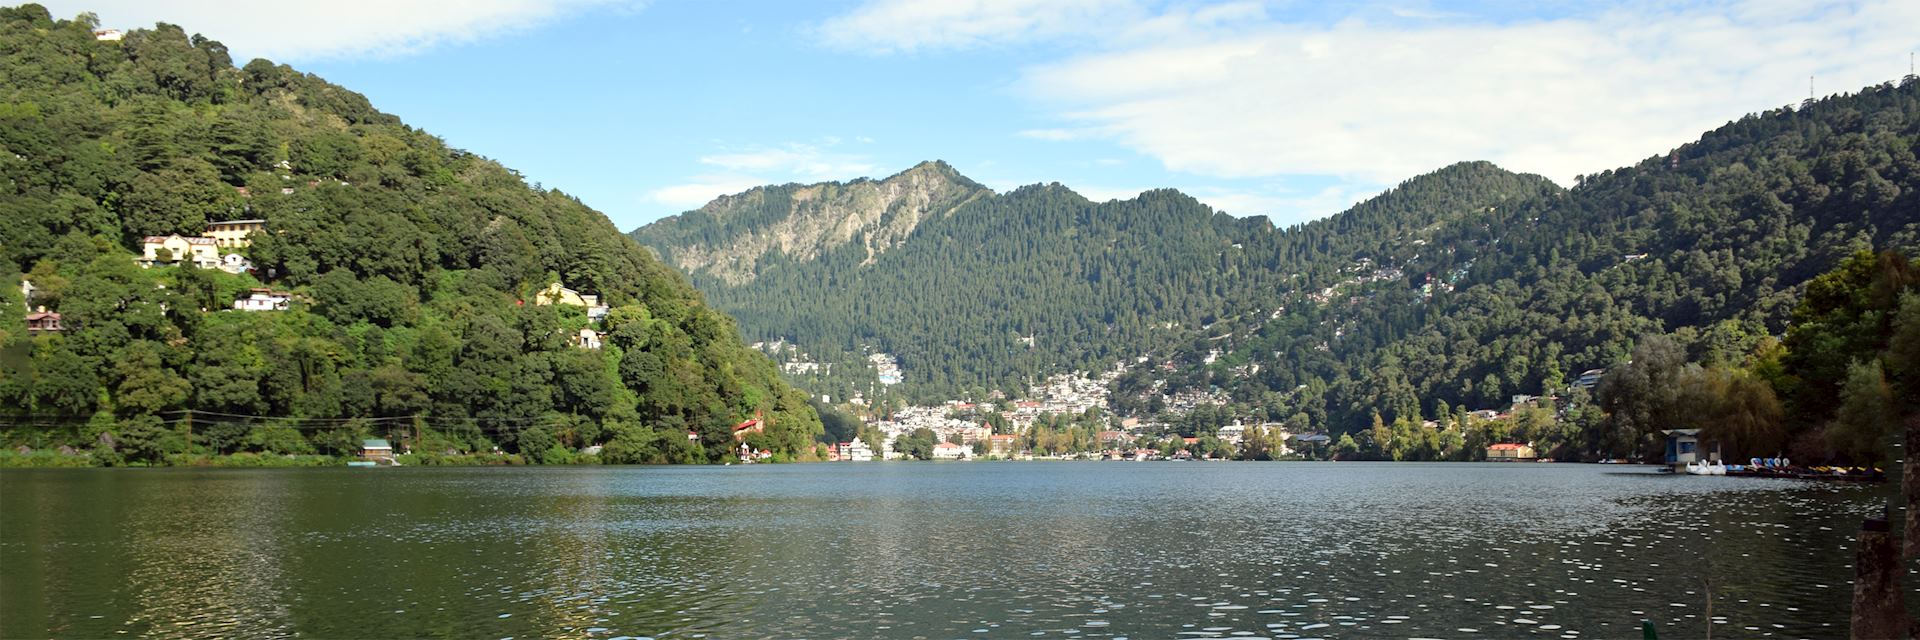 Lake and mountain view in Nainital